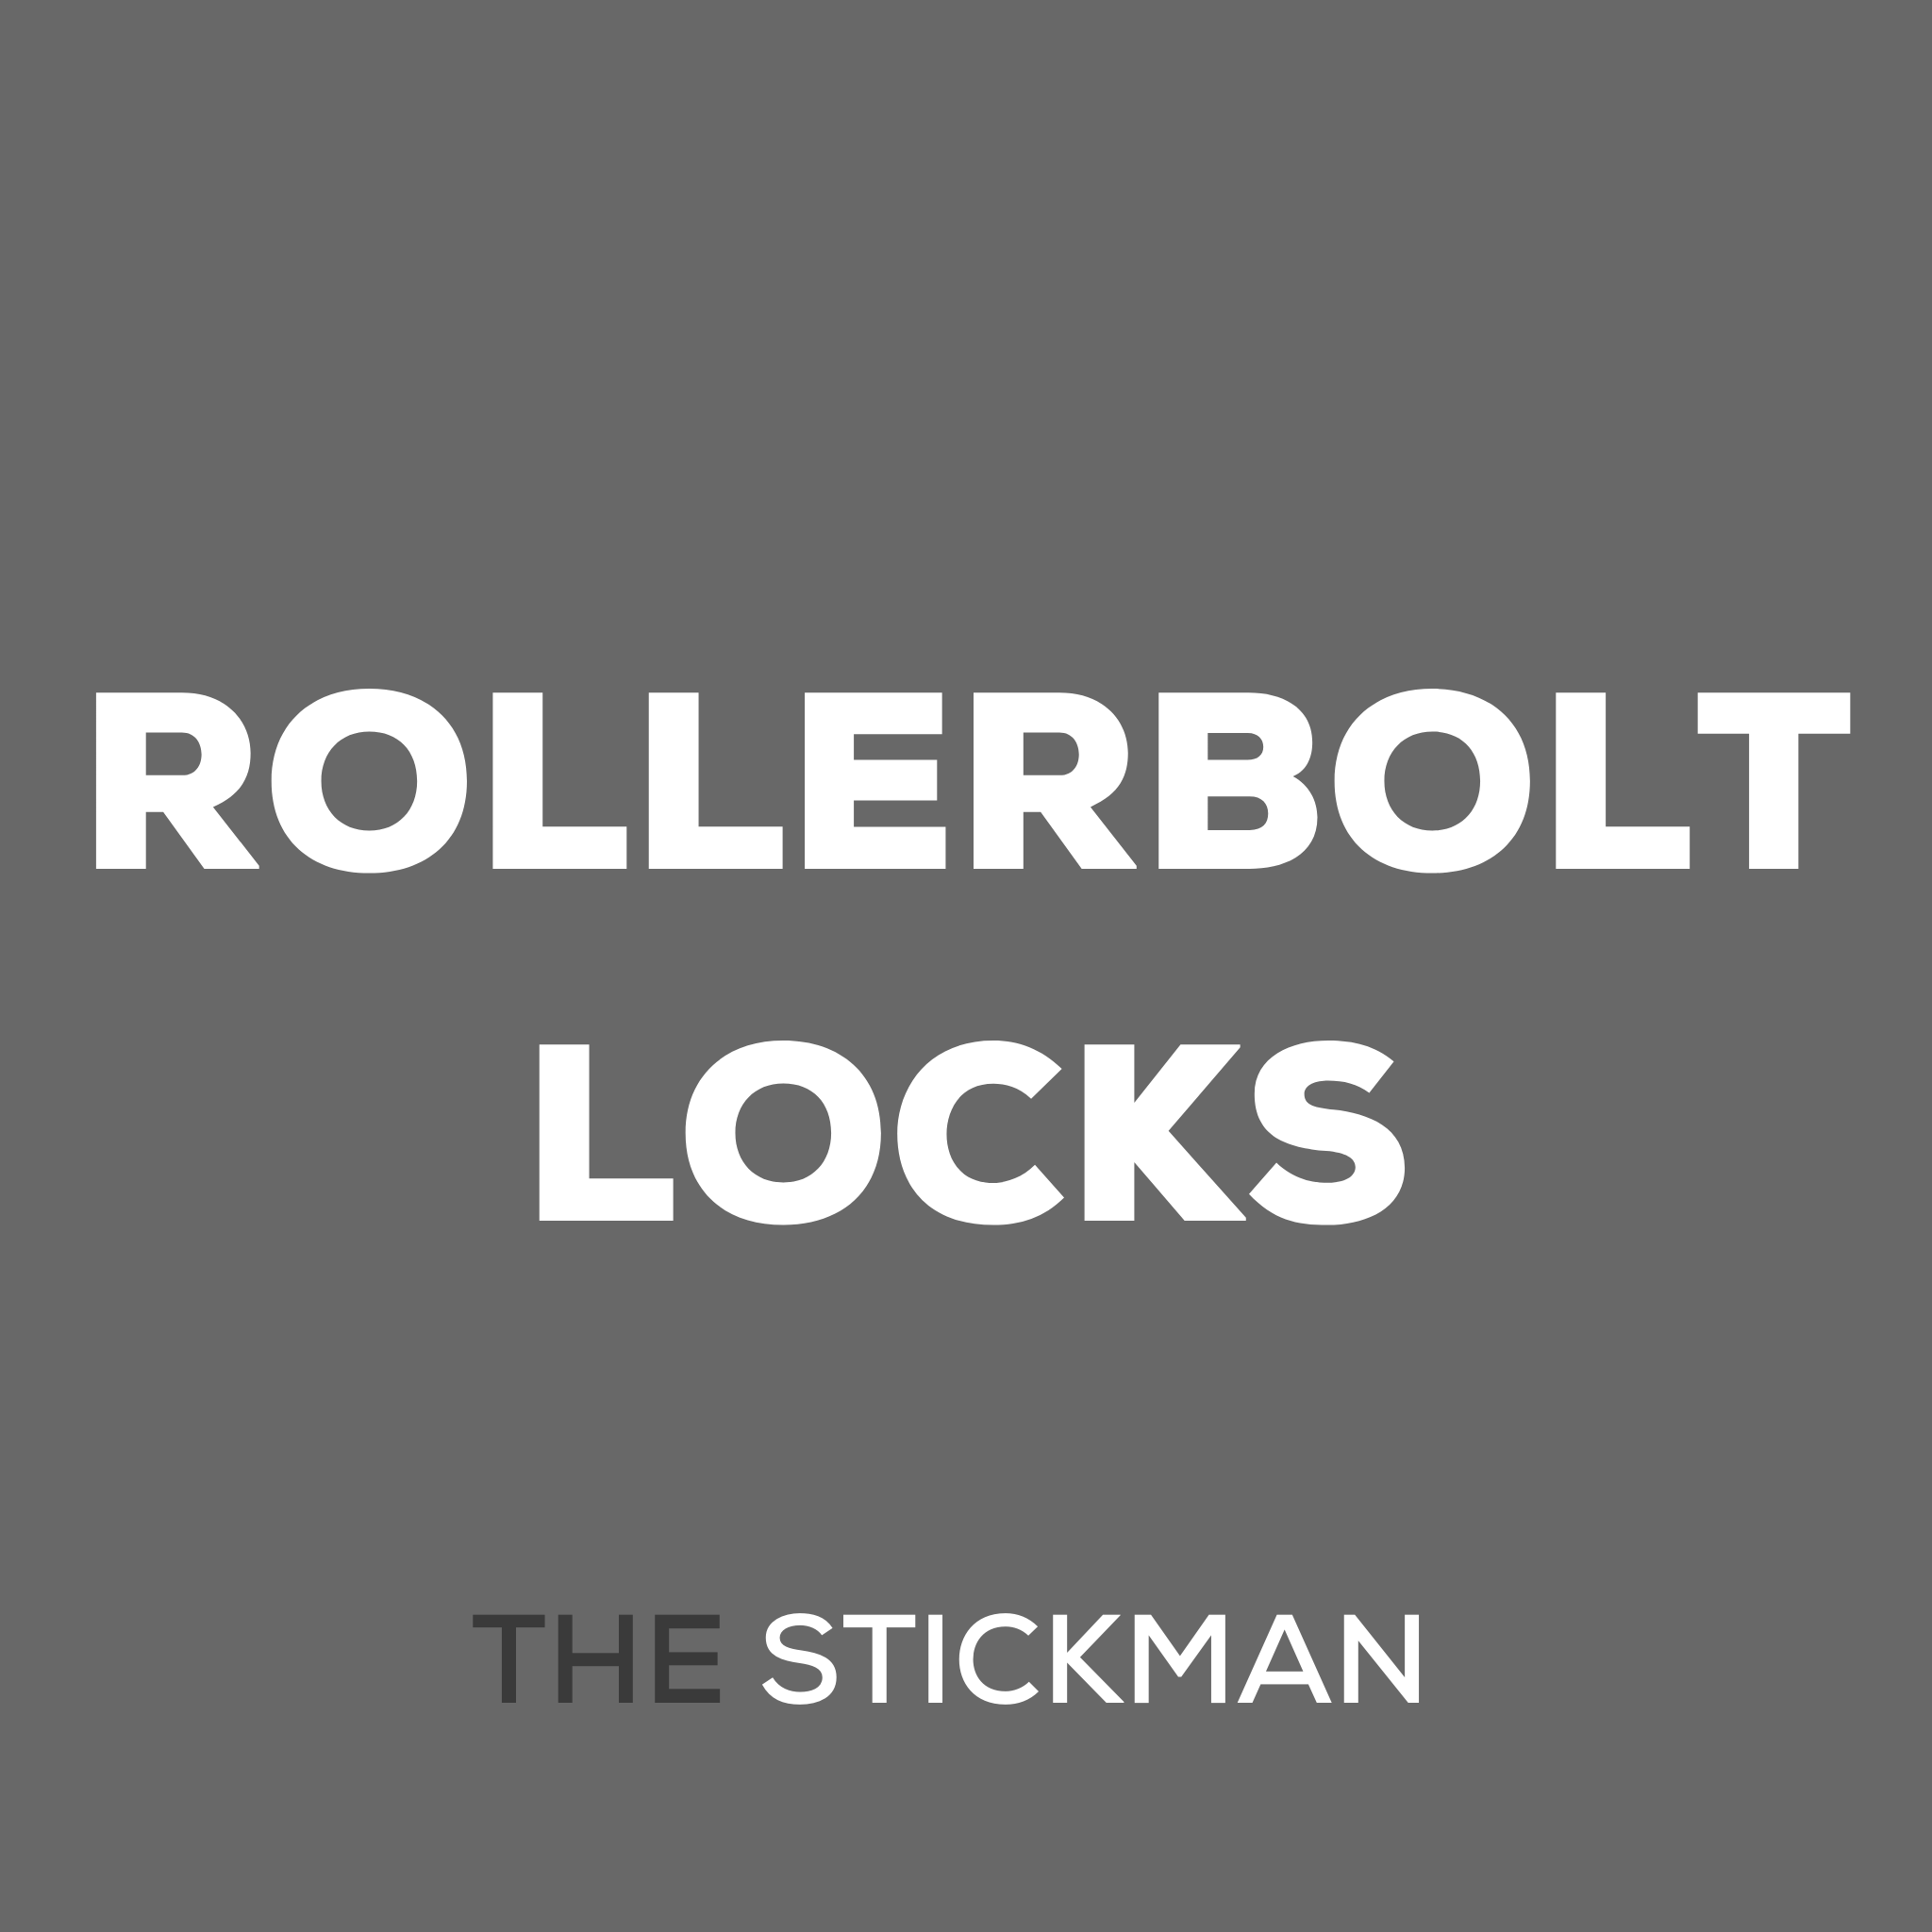 ROLLERBOLT LOCKS